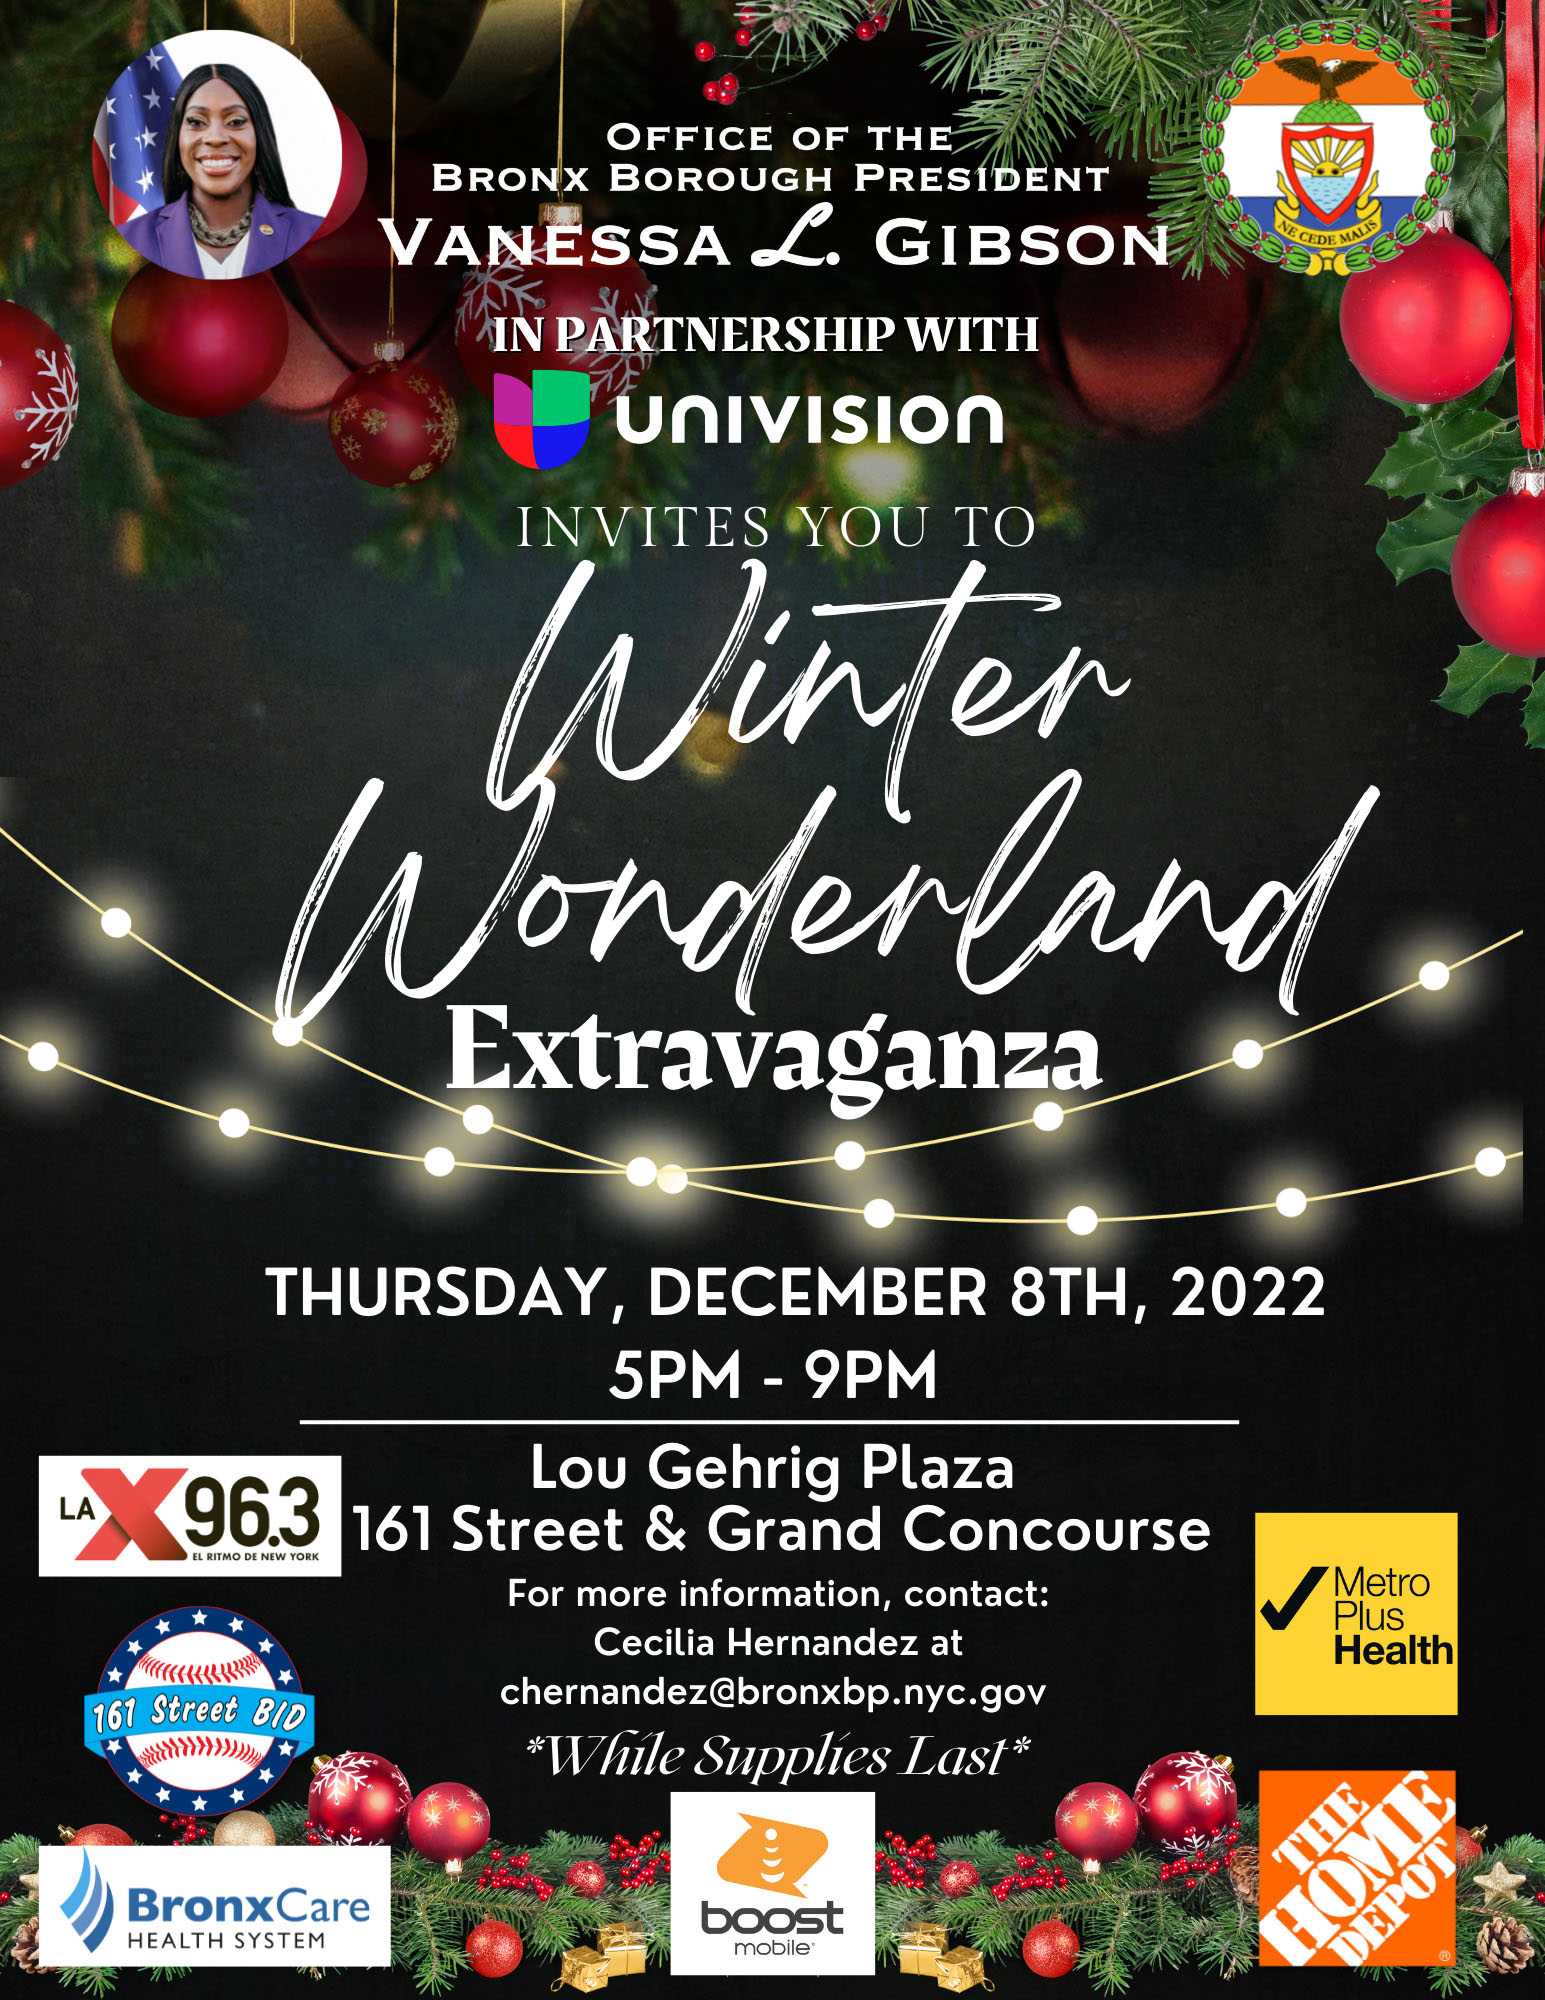 Winter Wonderland Extravaganza flyer - for more information contact Cecilia Hernandez at chernandez@bronxbp.nyc.gov